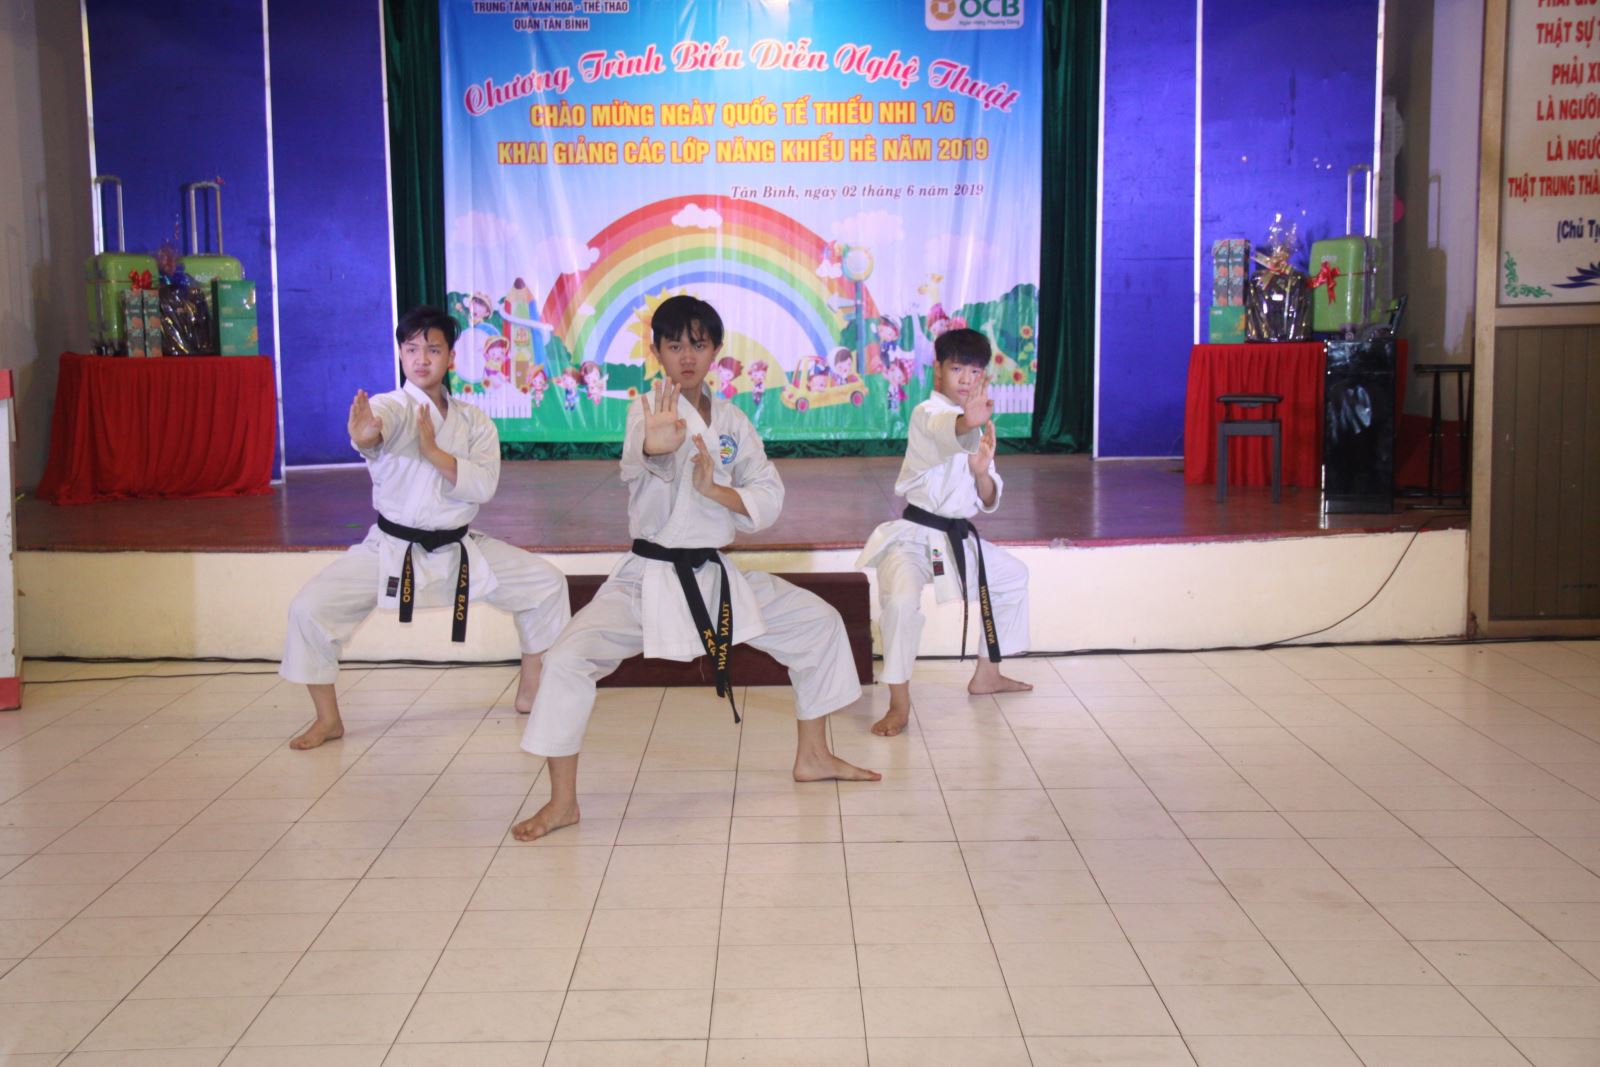 TT Văn hóa - Thể thao quận Tân Bình khai giảng các lớp năng khiếu hè 2019